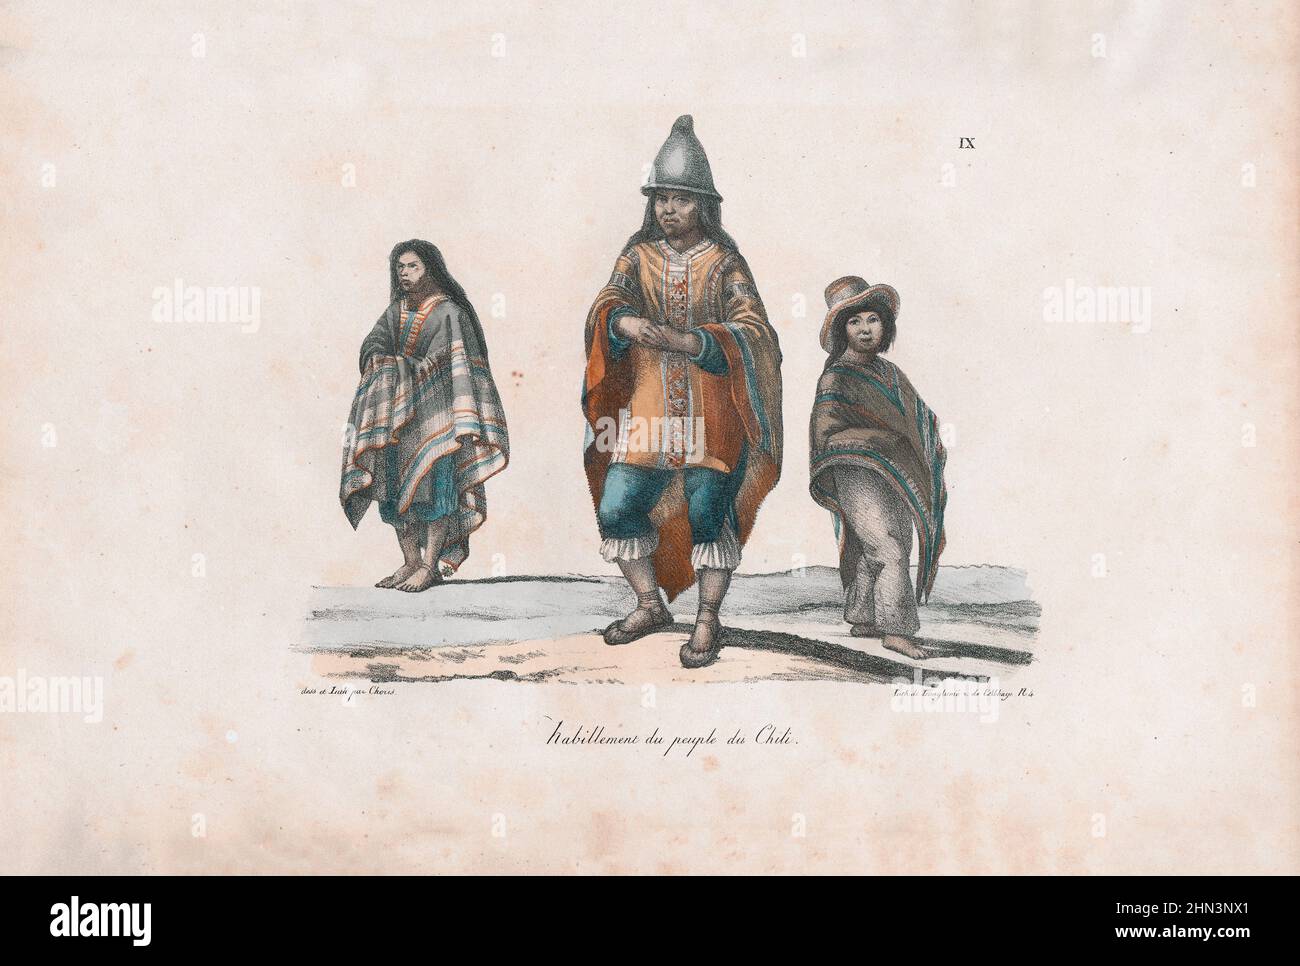 Lithographie de couleur de vêtements du peuple du Chili. 1822, par Louis Choris. Banque D'Images